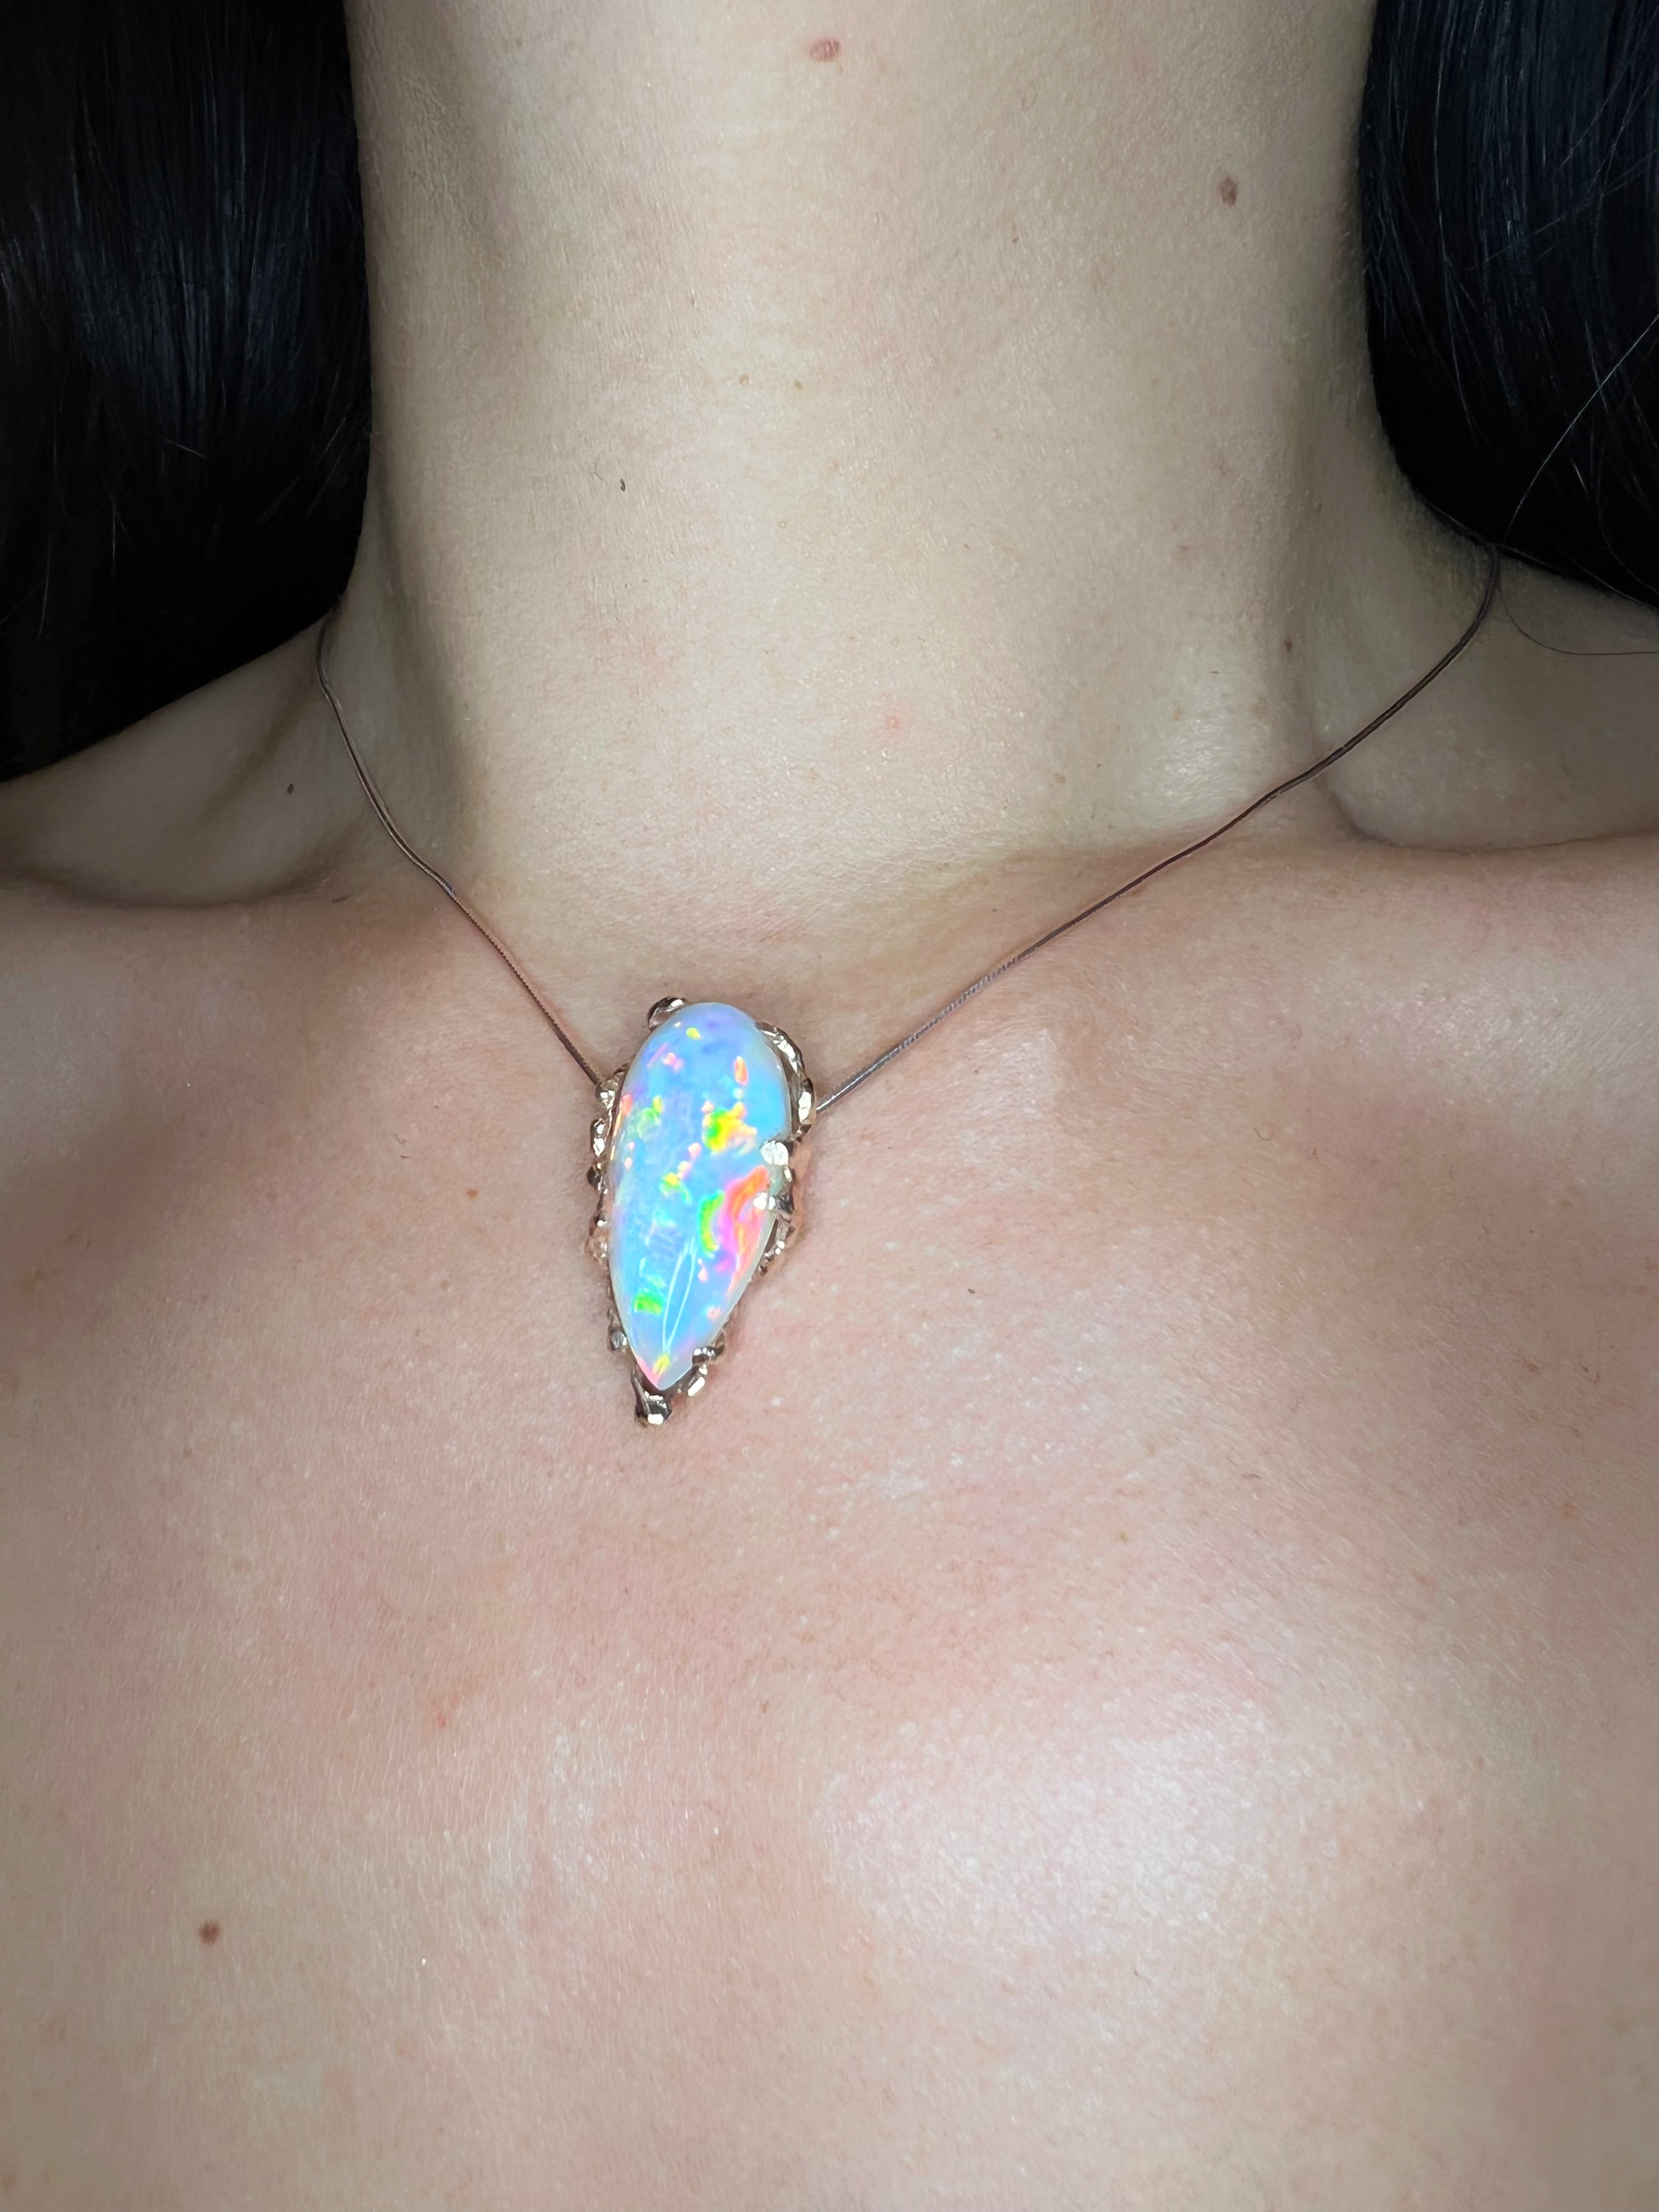 Prism Honeycomb OPAL necklace 10kt